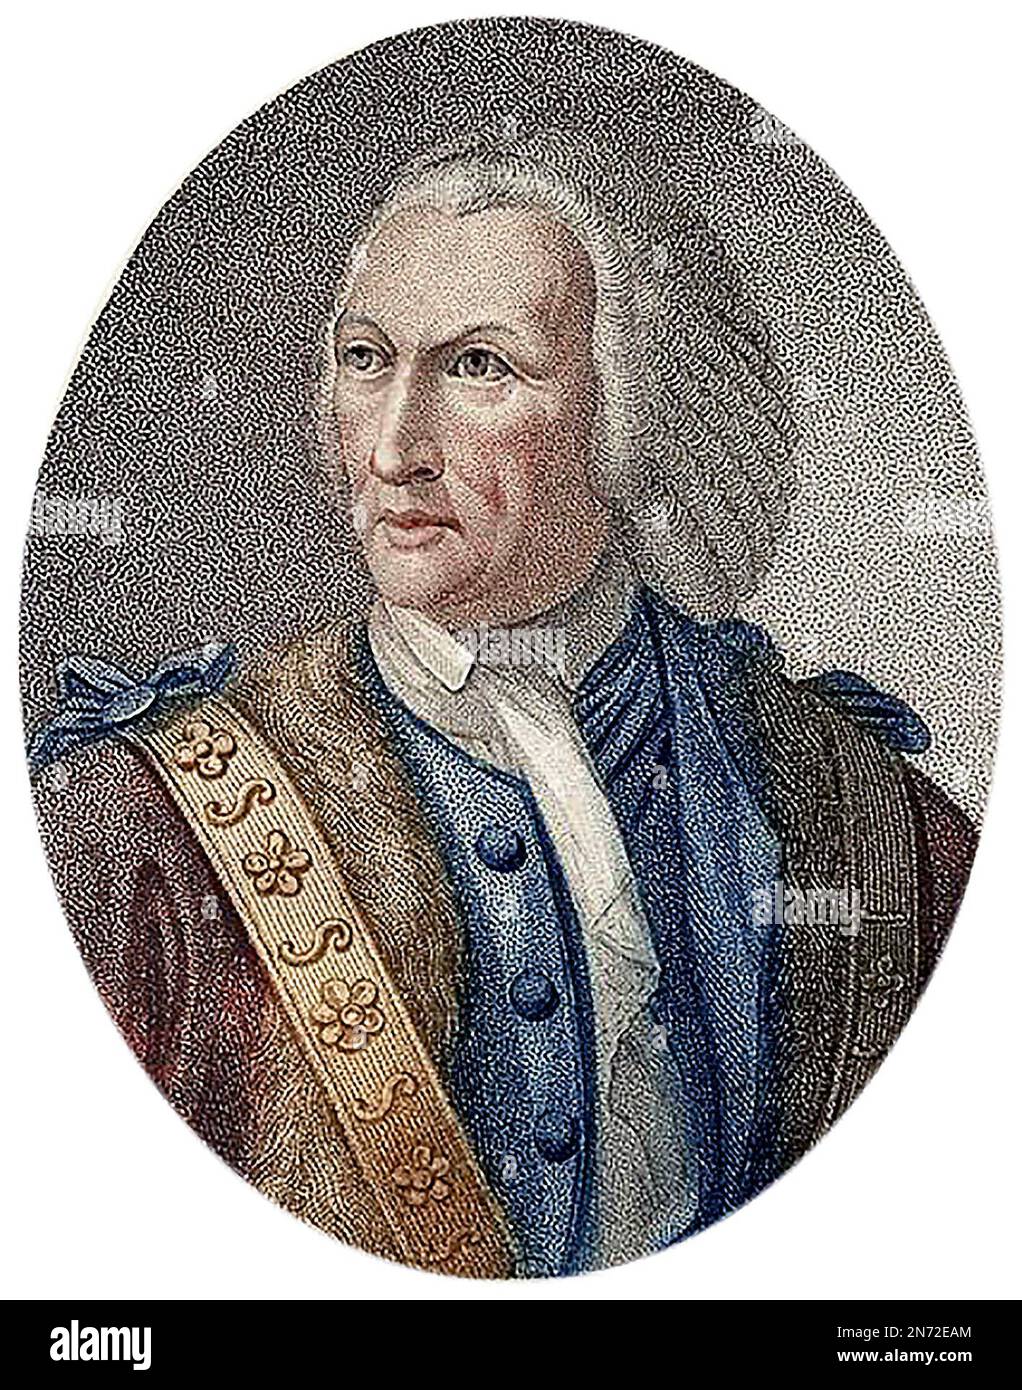 William Beckford. Ritratto della figura politica inglese che fu due volte Lord Mayor di Londra, William Beckford (1709-1770) Foto Stock